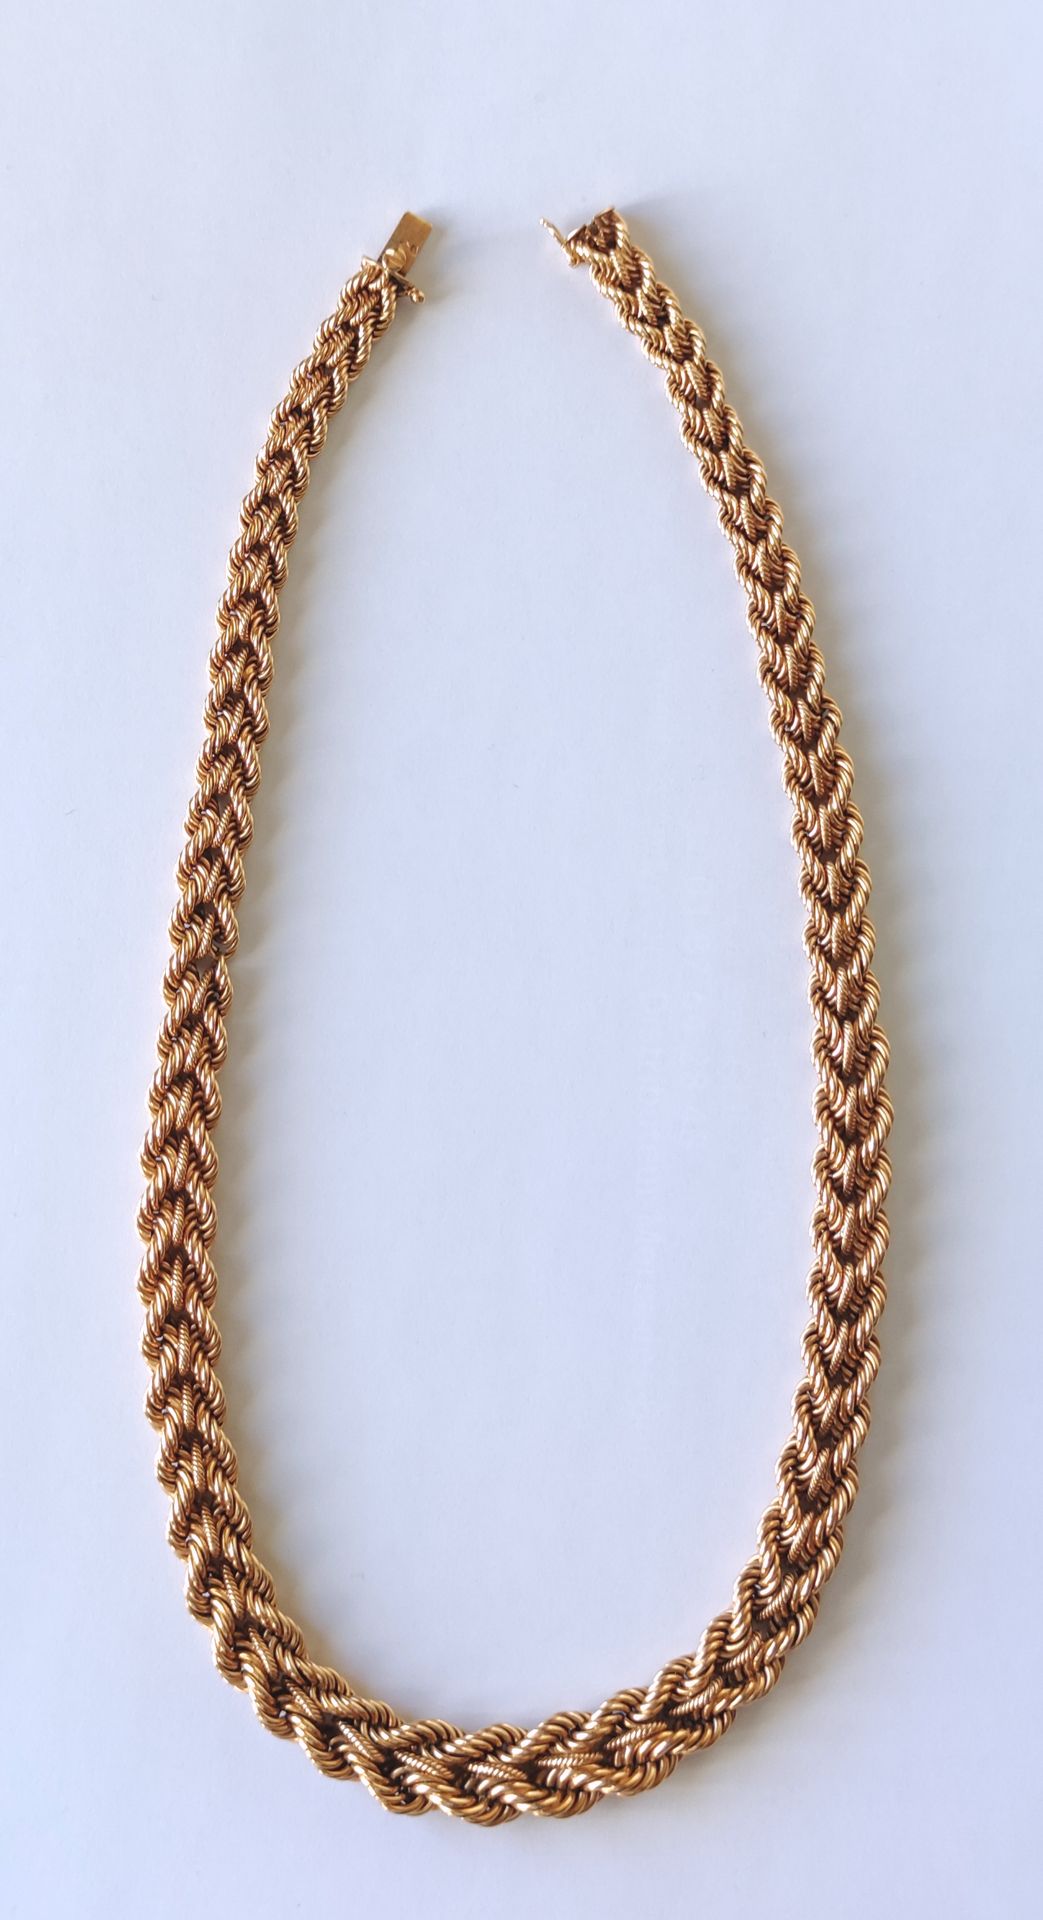 Null 
750°/°黄金项链，带编织降格纹。
长度：44厘米 重量：49.5克